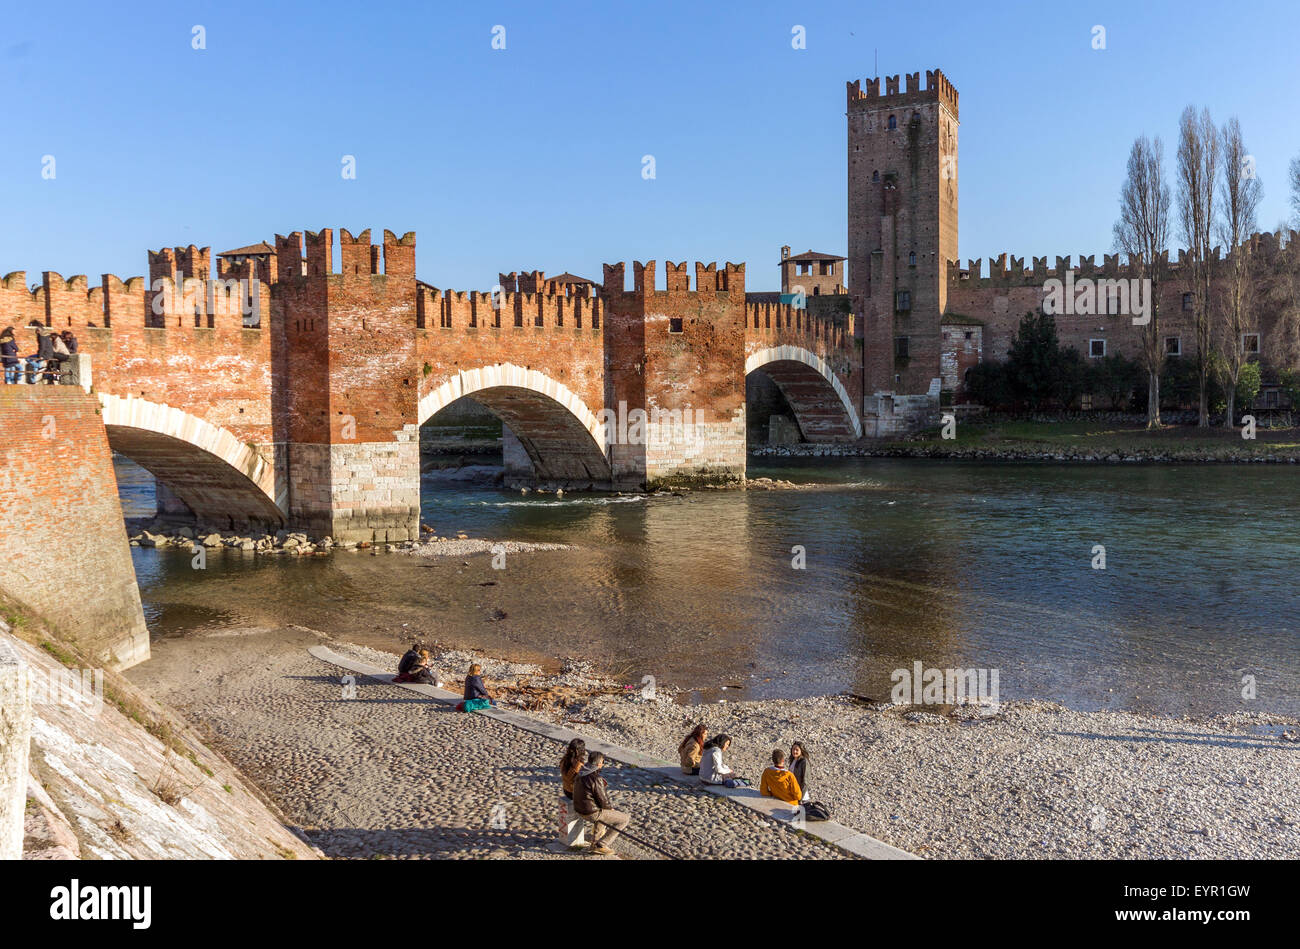 Italia, Venecia, Verona, el puente Scaligero Foto de stock